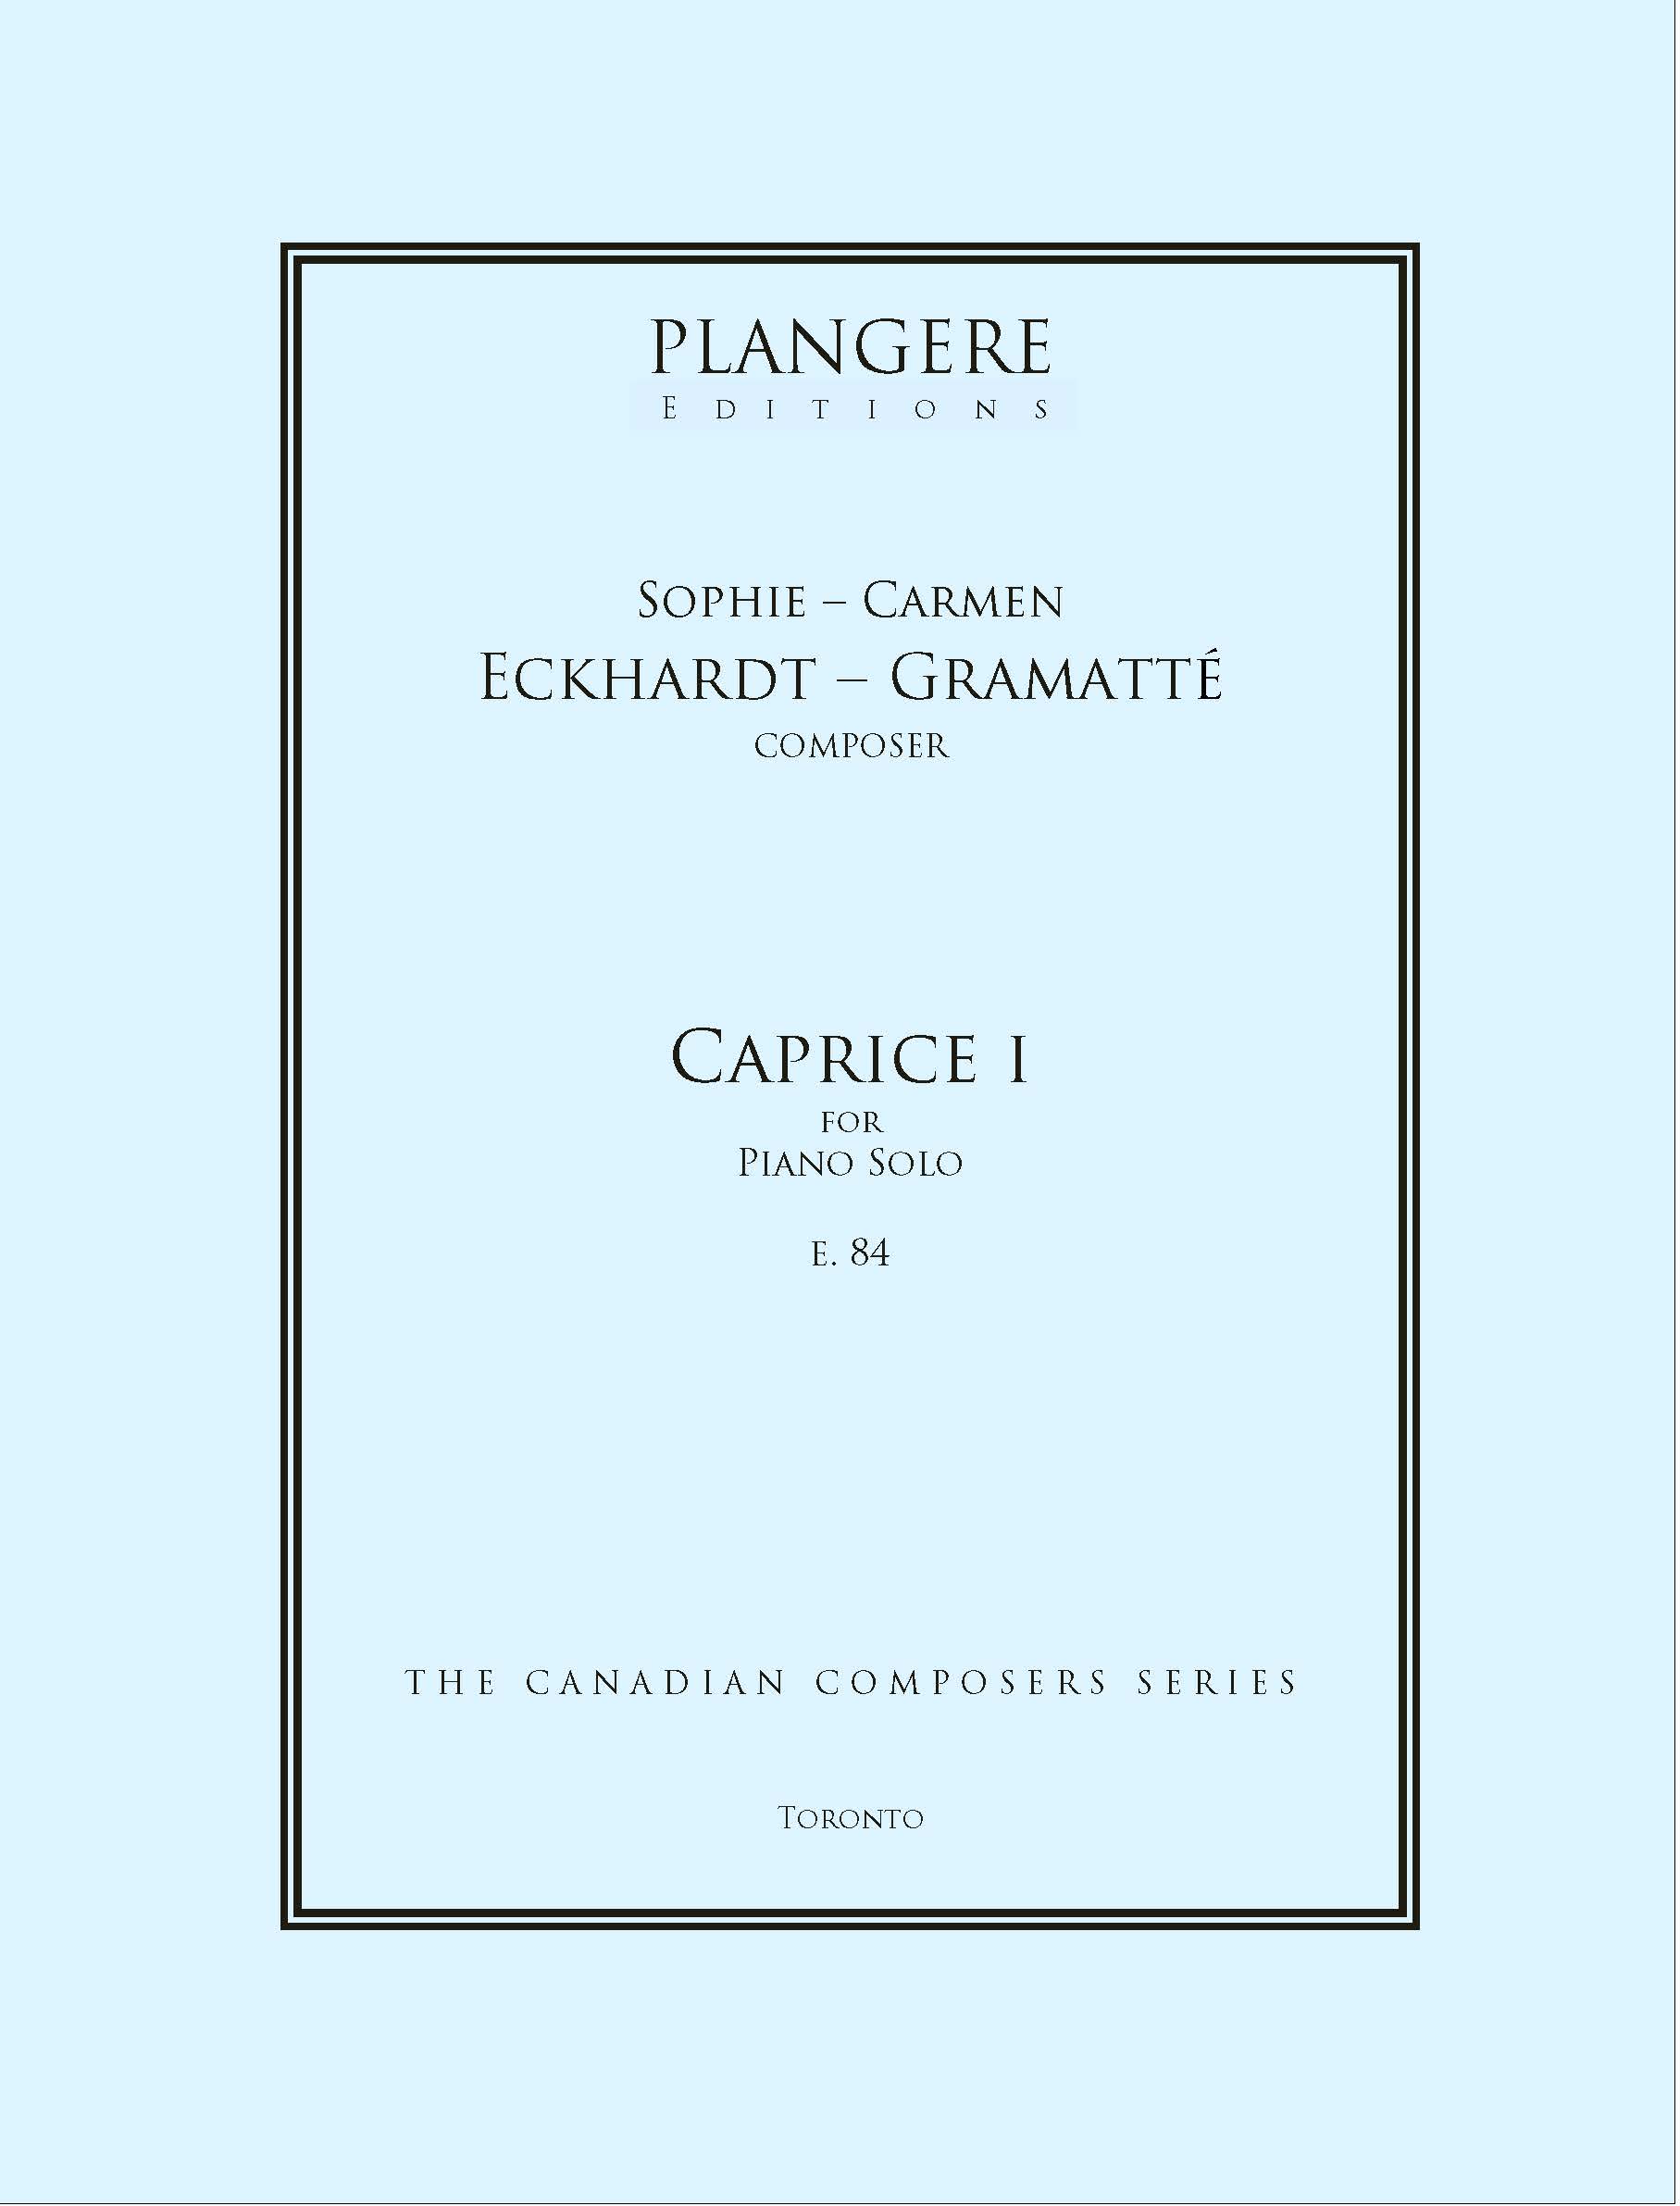 Sophie-Carmen Eckhardt- Gramatté   Caprice I for Piano    E.  84